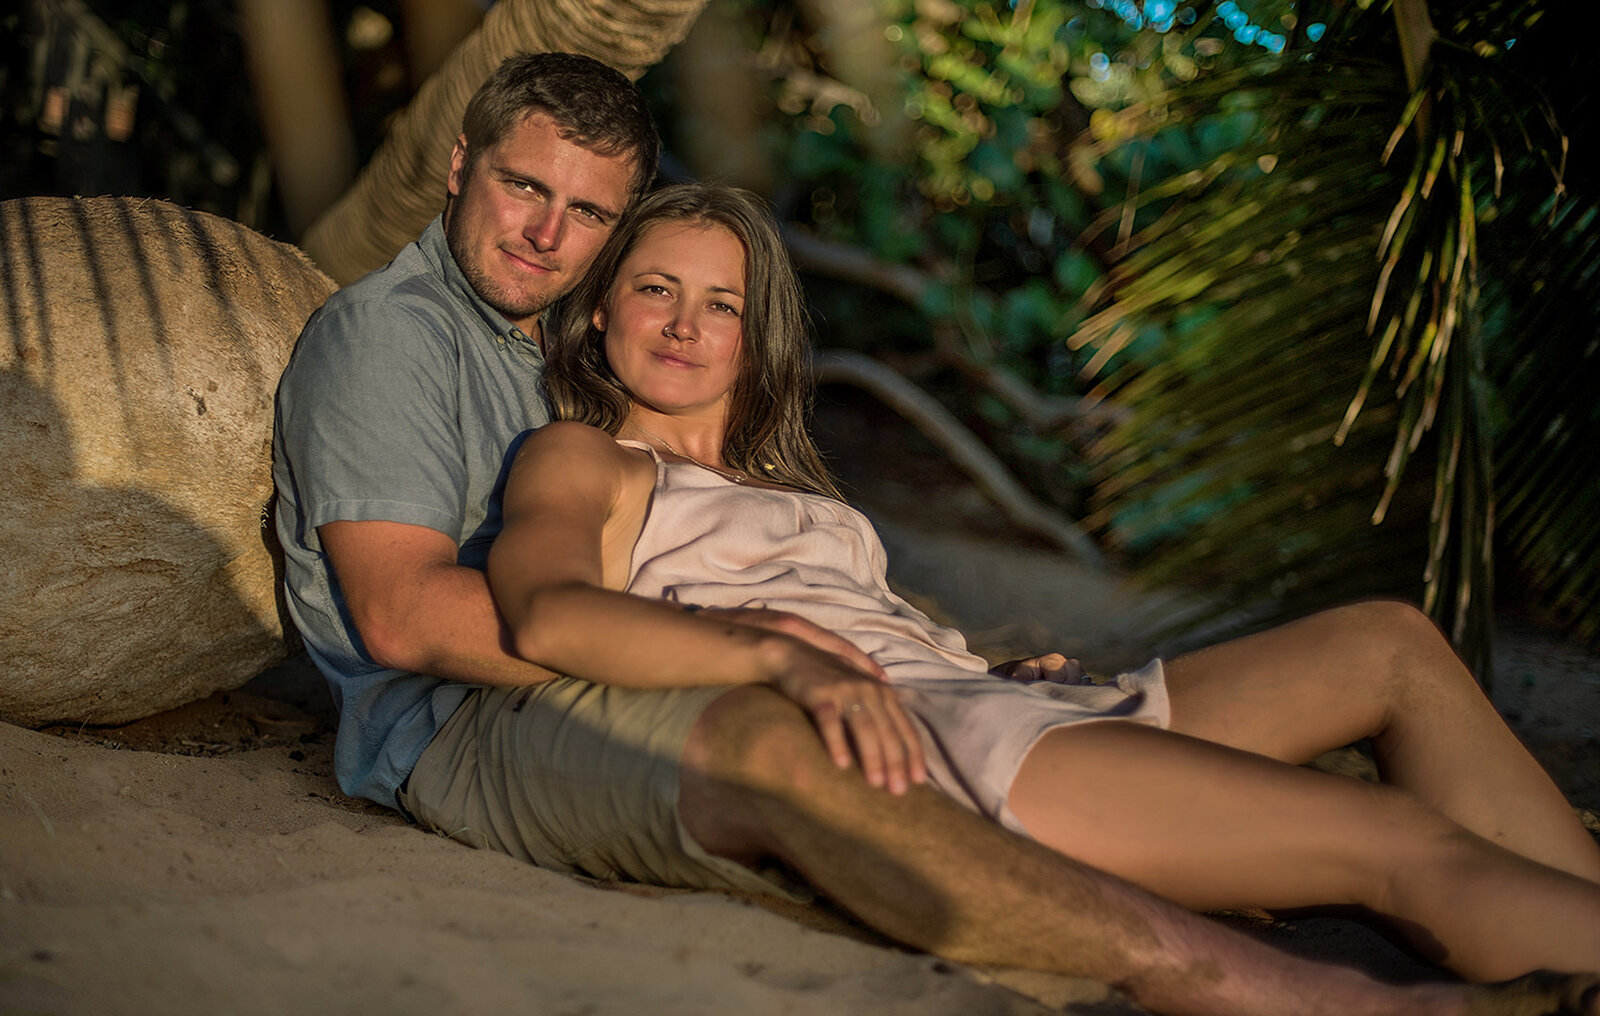 Engagement photographers on Kauai